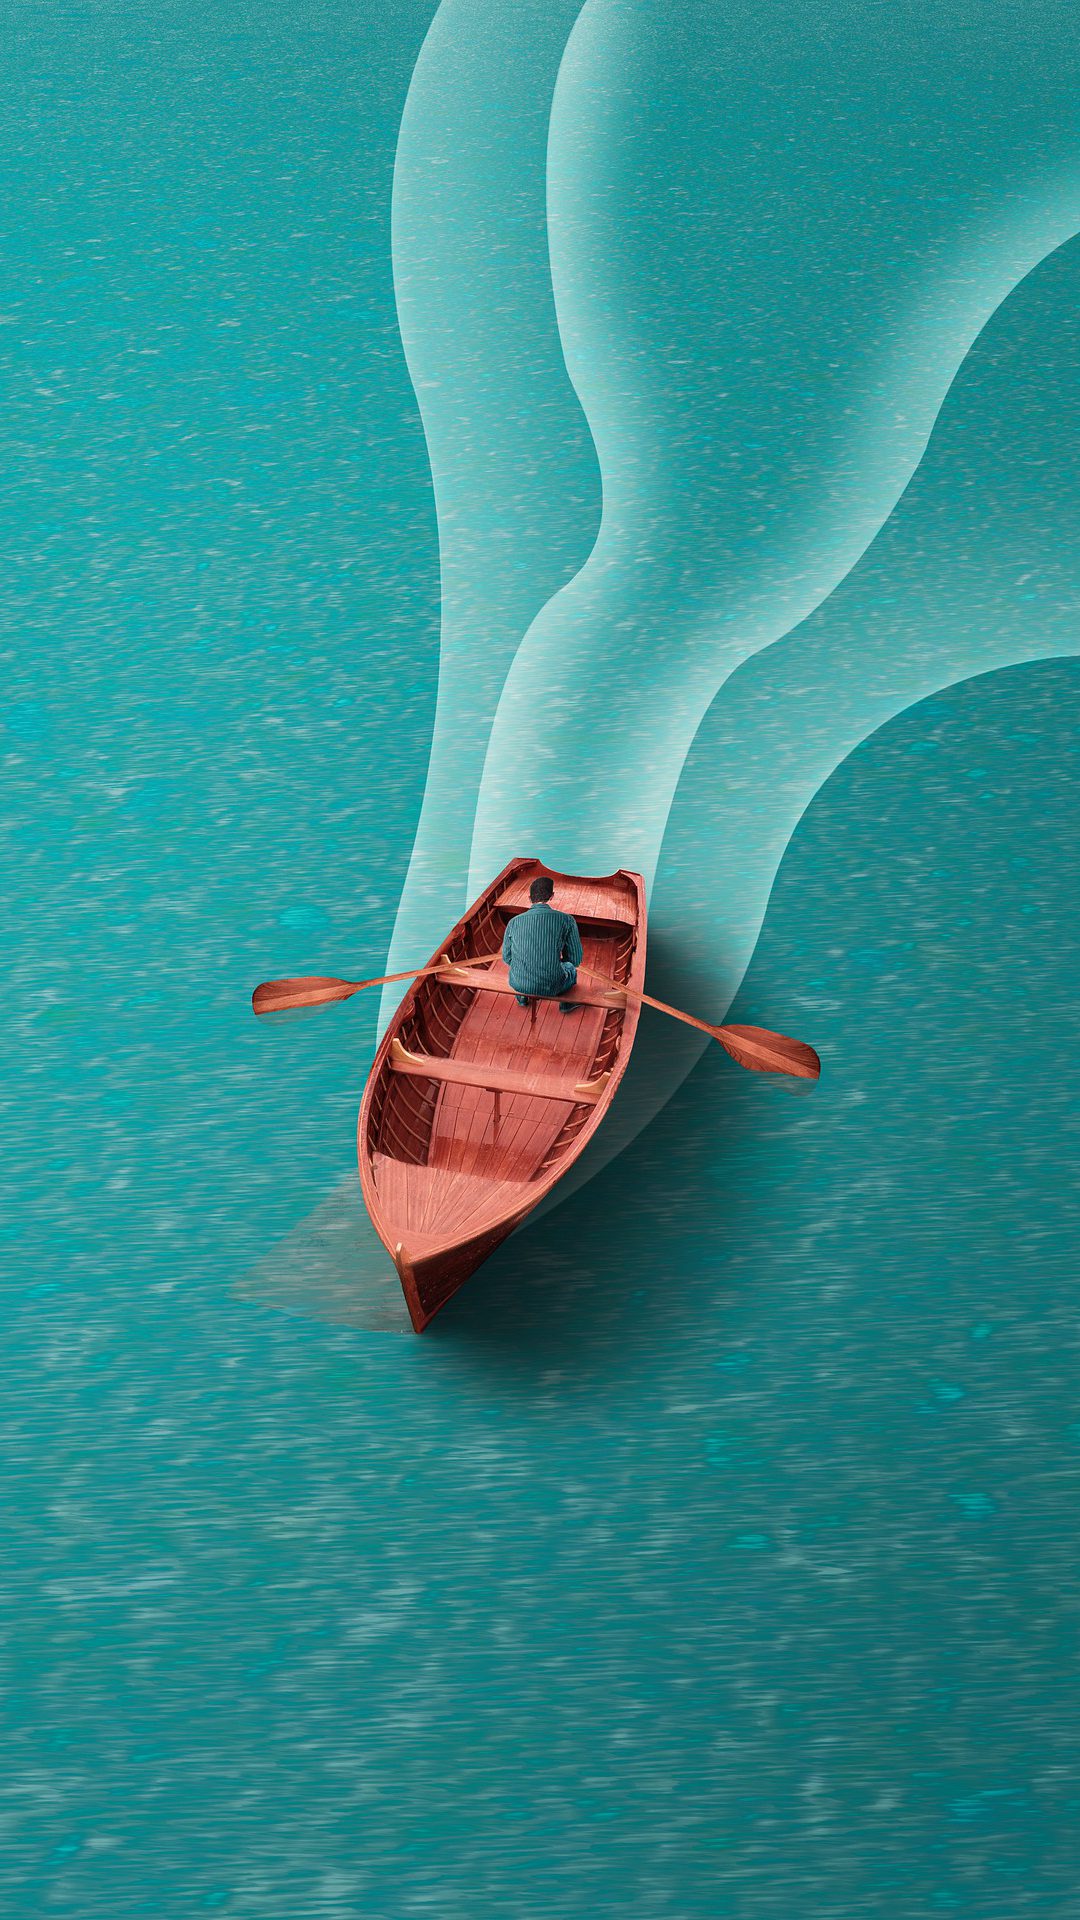 一个划船的男子非主流插画手机壁纸图片 平静<span style='color:red;'>蔚蓝</span>的湖面